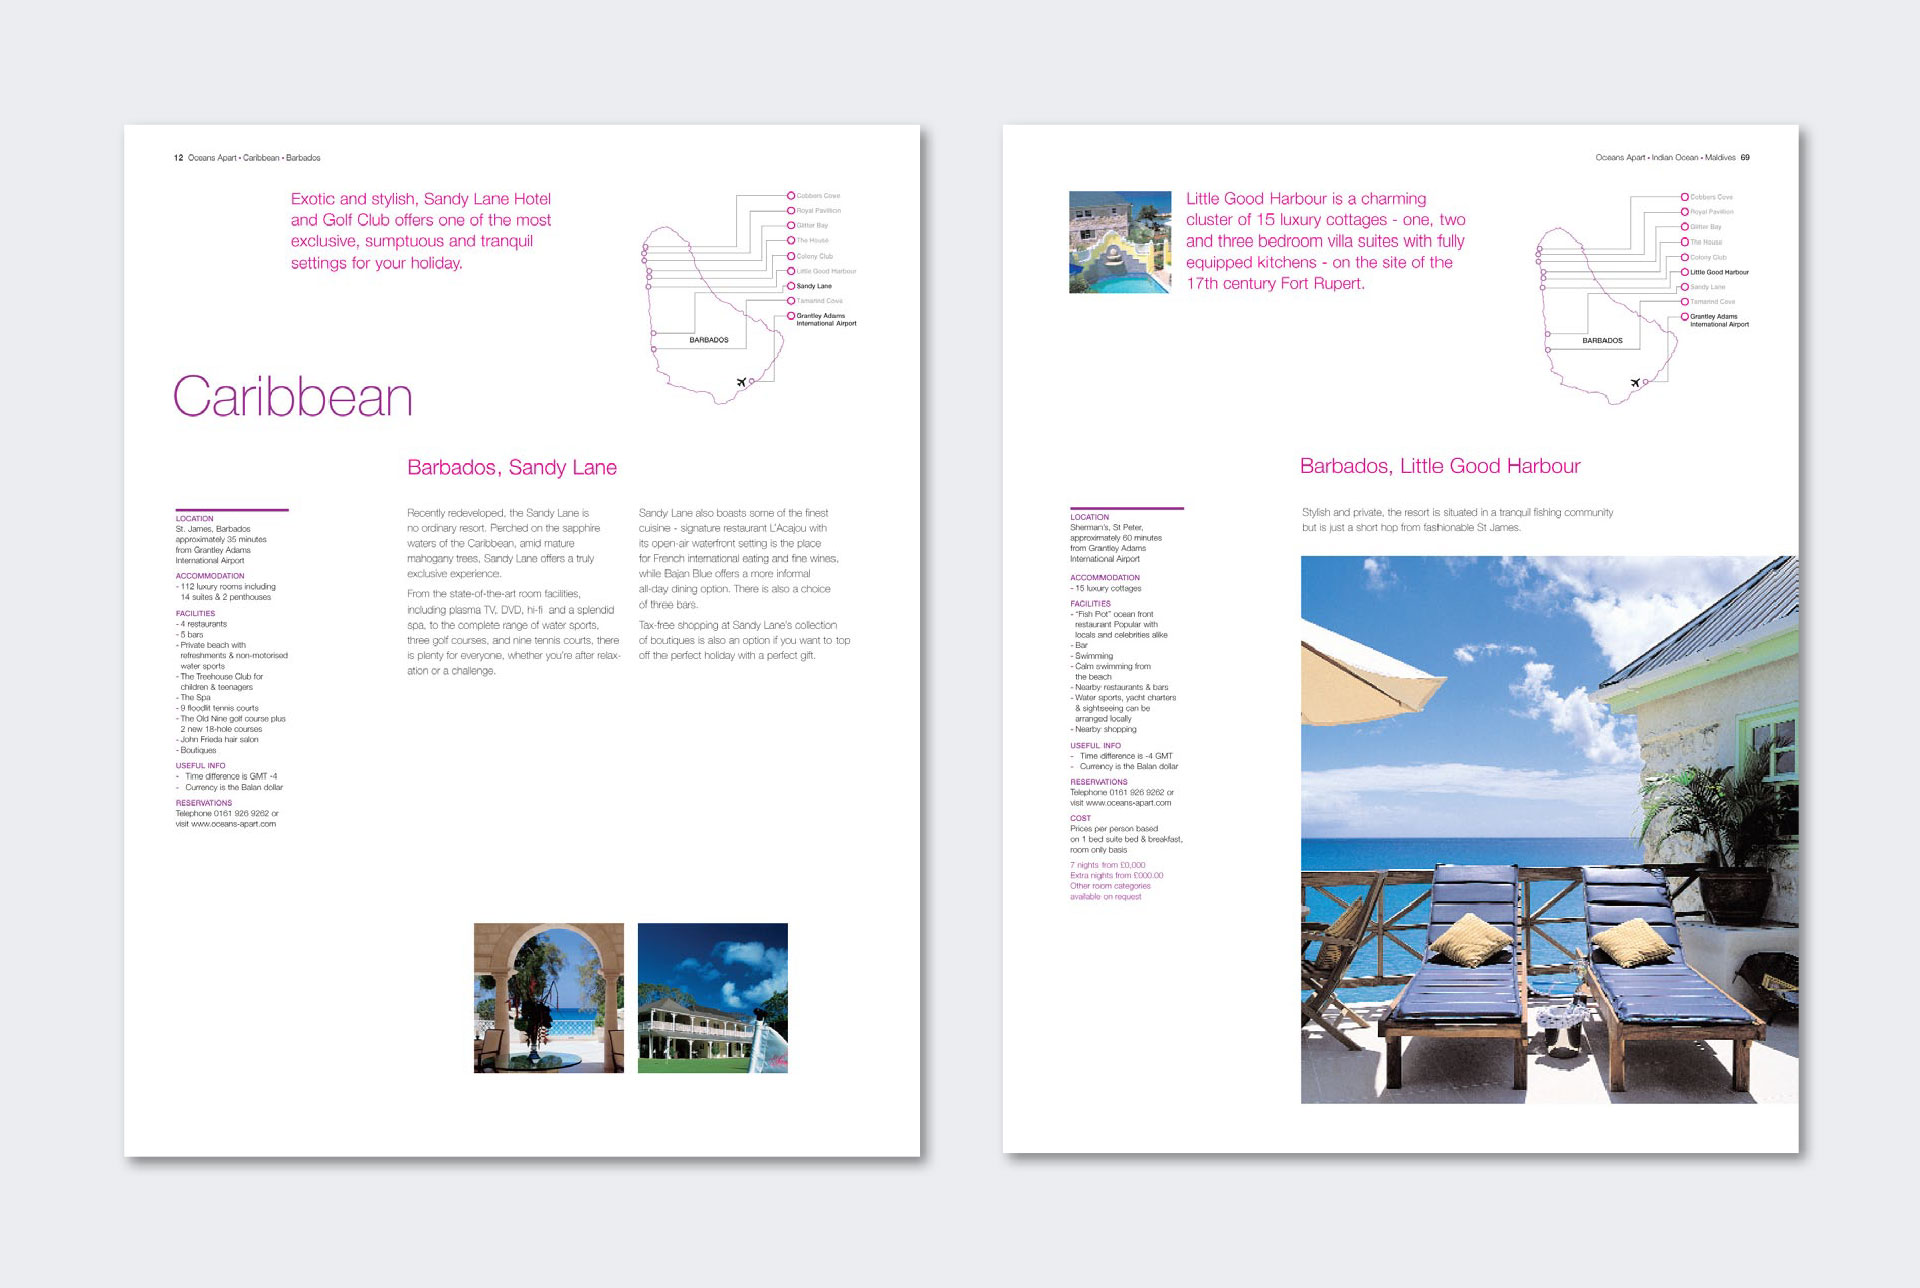 oceans-apart-travel-brochure-internal-pages.jpg